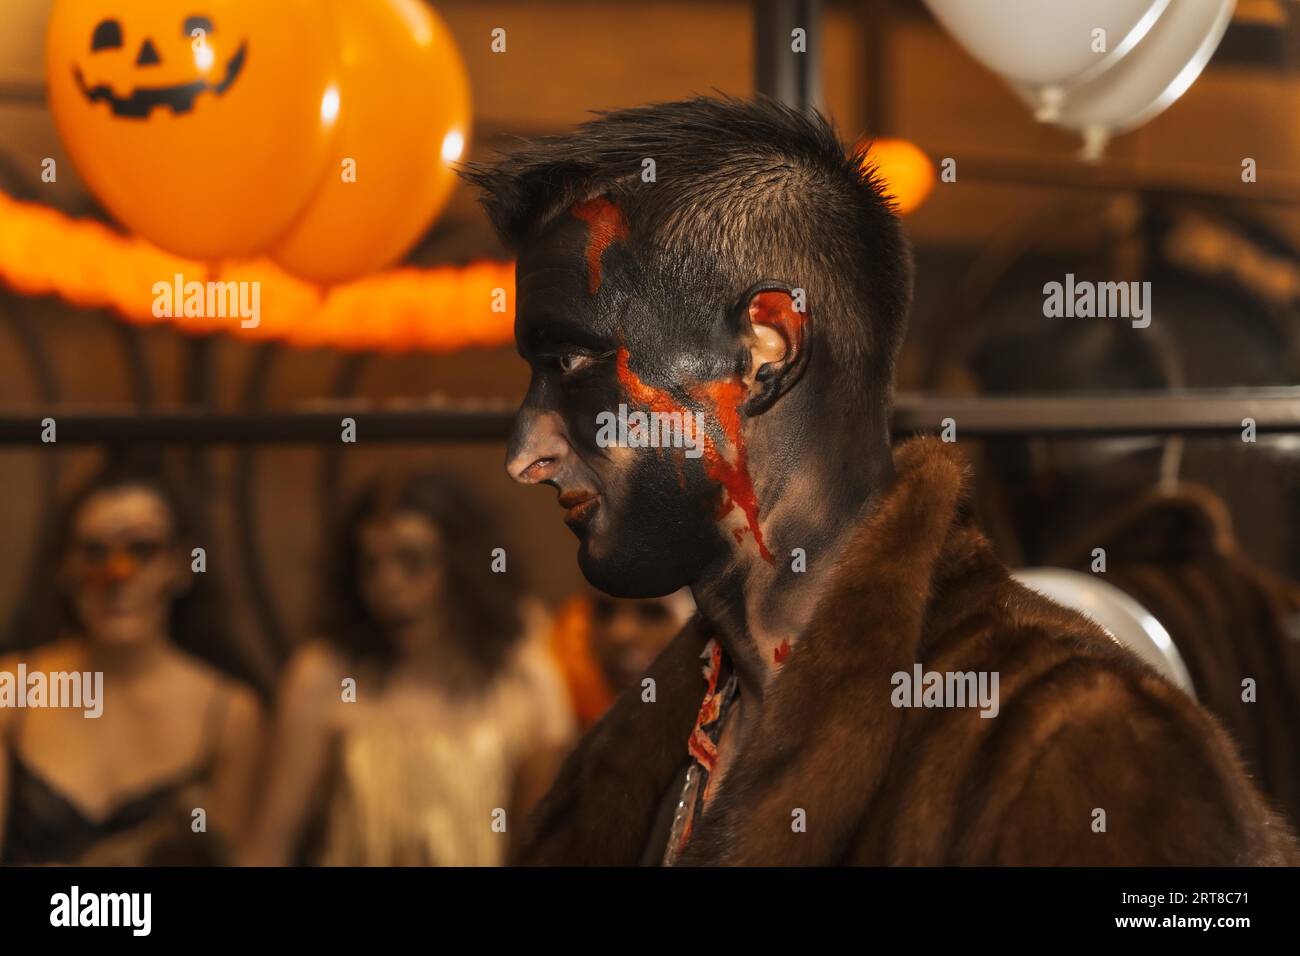 Fête d'Halloween avec des amis dans une discothèque, portrait d'un homme en costume avec lit peint Banque D'Images